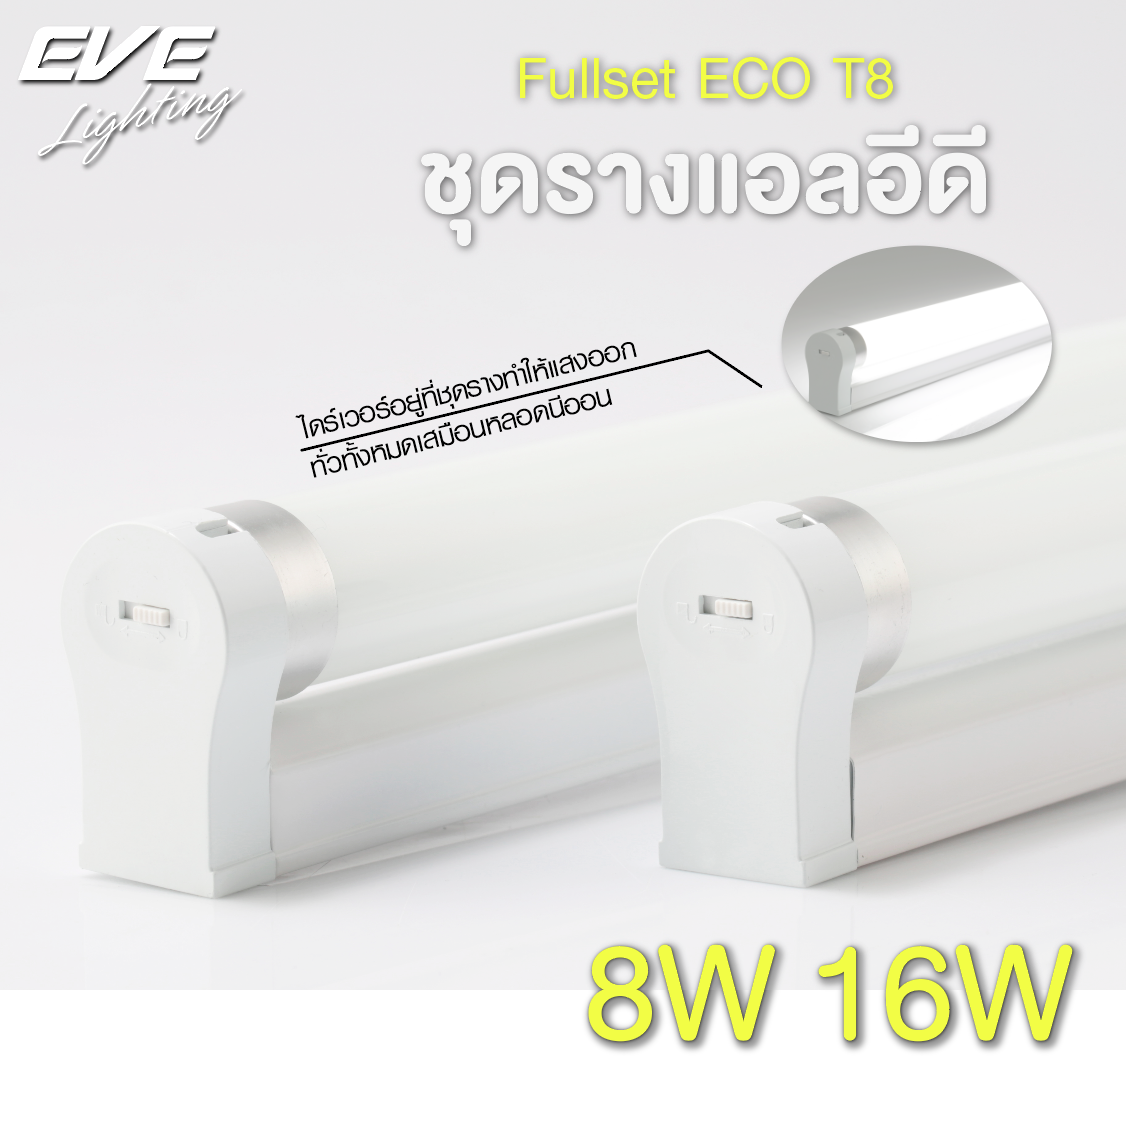 LED Fullset ECO T8 8, 16w